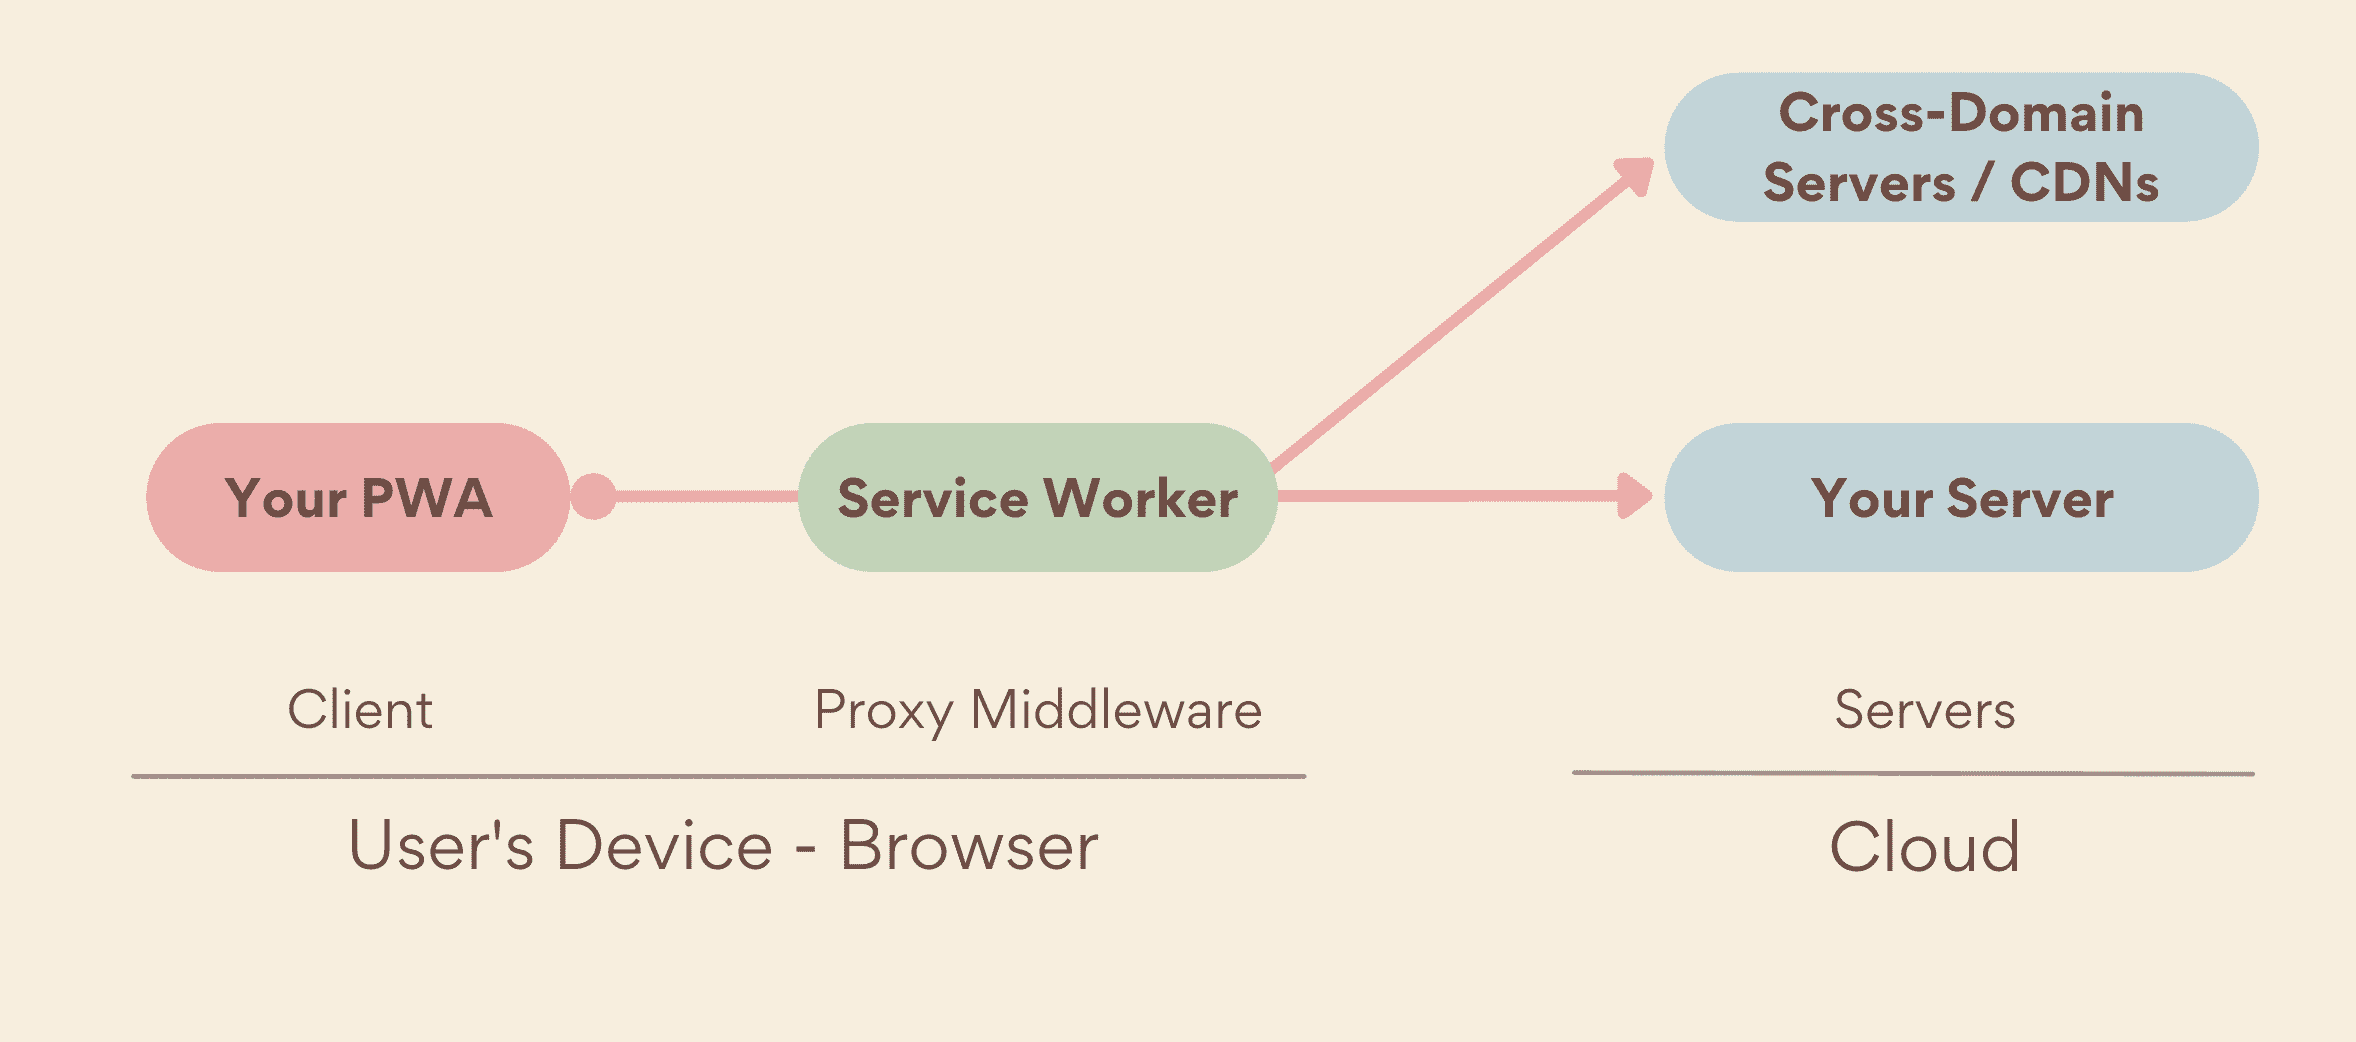 서비스 워커는 PWA와 서버 사이에서 기기 측에서 실행되는 미들웨어 프록시로서, 자체 서버와 교차 도메인 서버가 모두 포함됩니다.